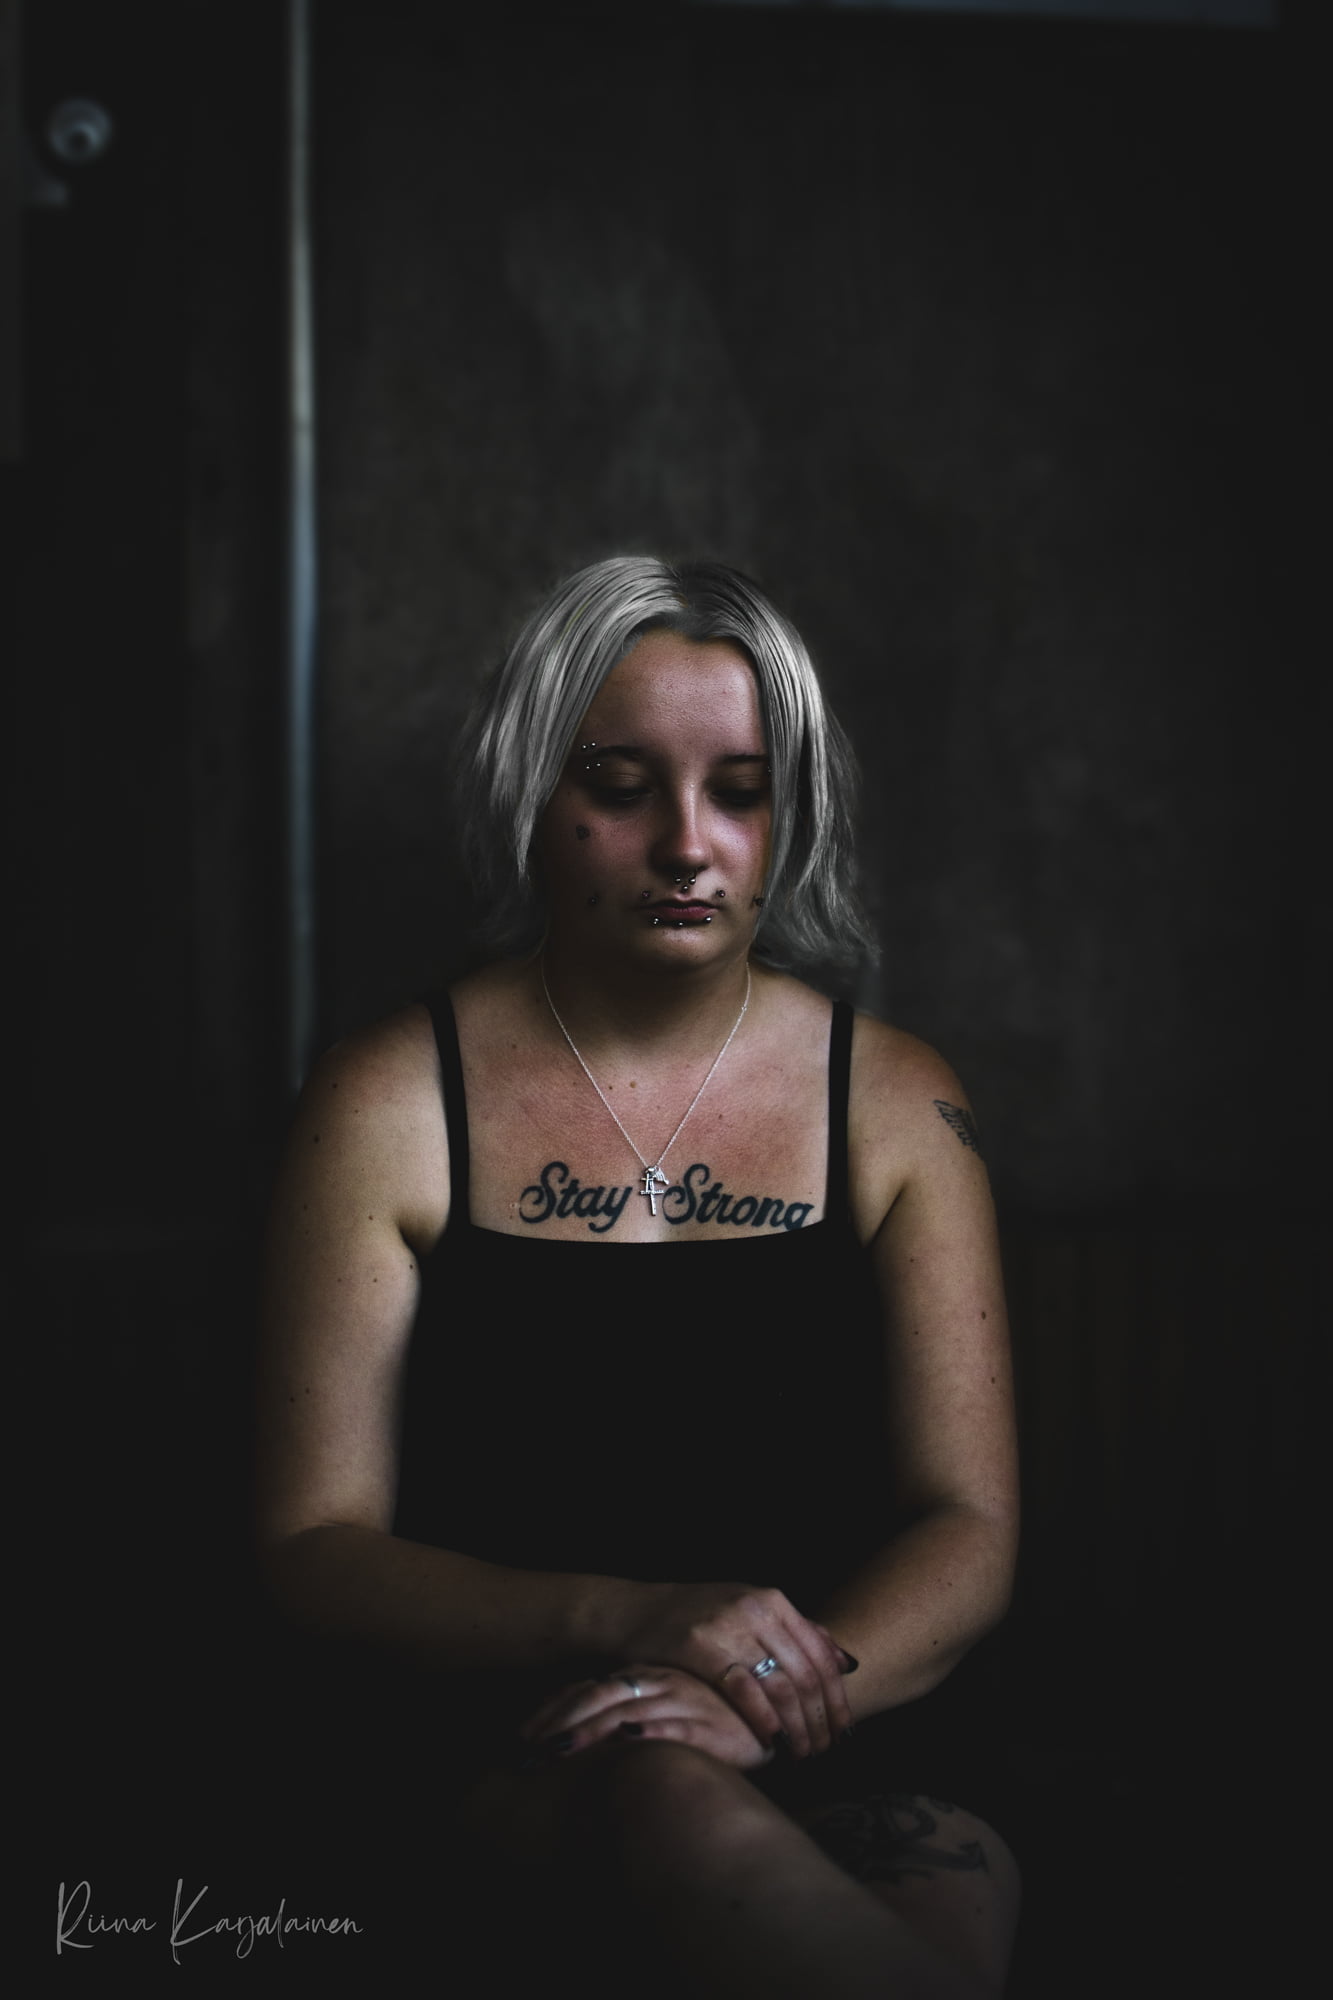 Mielenterveysviikko 47, 2022. Valokuvaaja Riina K, Varkaus. Henkilökuvausportfolio